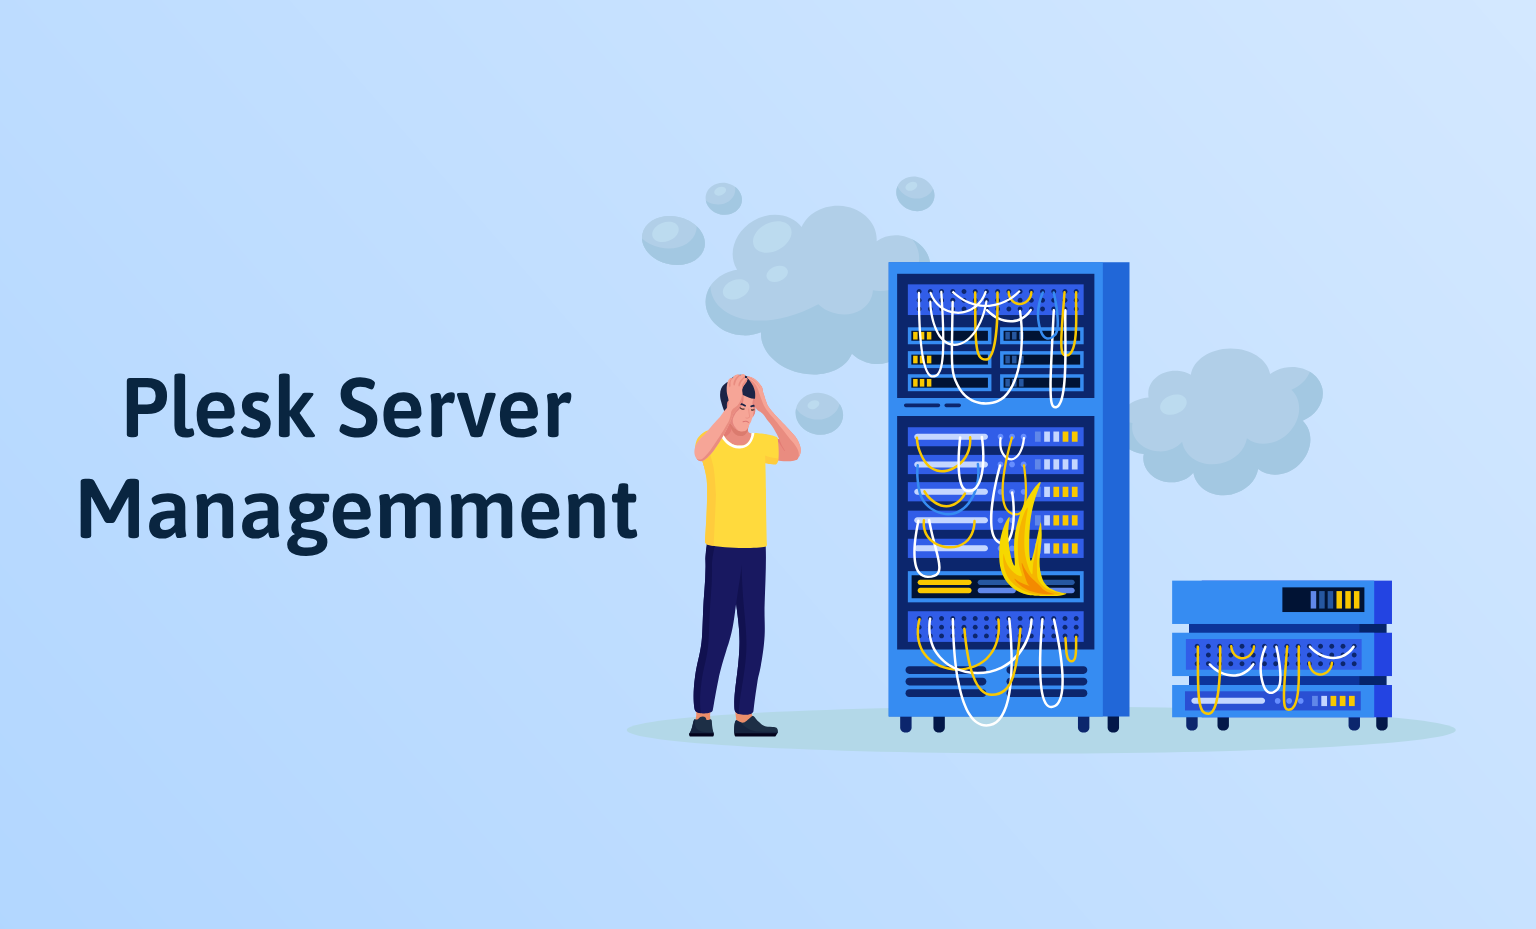 Plesk server management service (1)